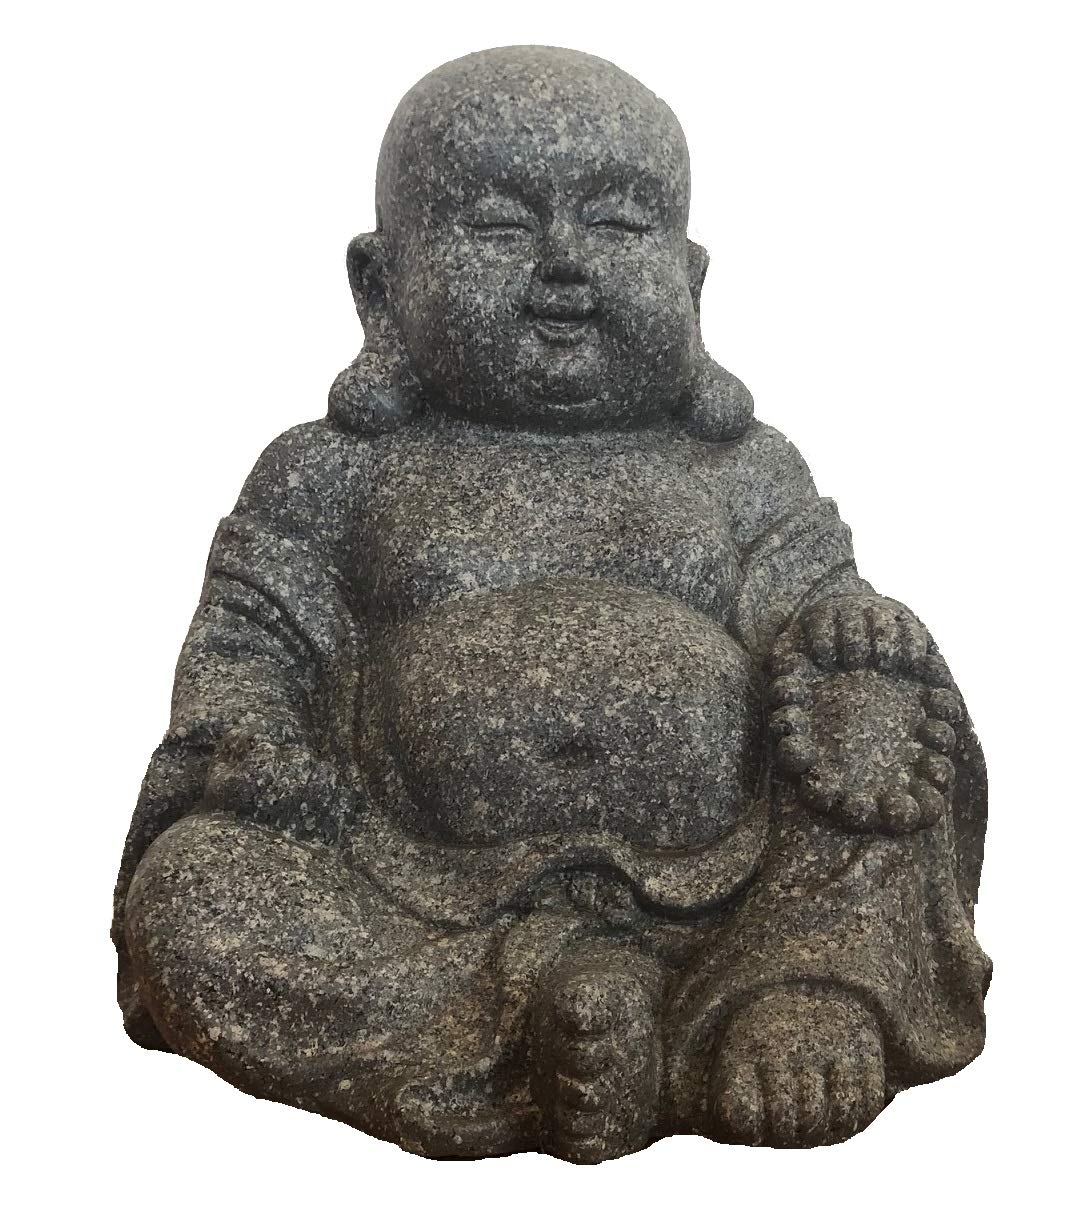 Supwave Deko-Buddha sitzend, ca. 31cm hoch in Granitoptik | Granit | Buddha-Figur für Wohnung, Haus | Buddha-Statue, Wohnaccessoire Buddha-Skulptur Feng Shui Dekoration | Poly